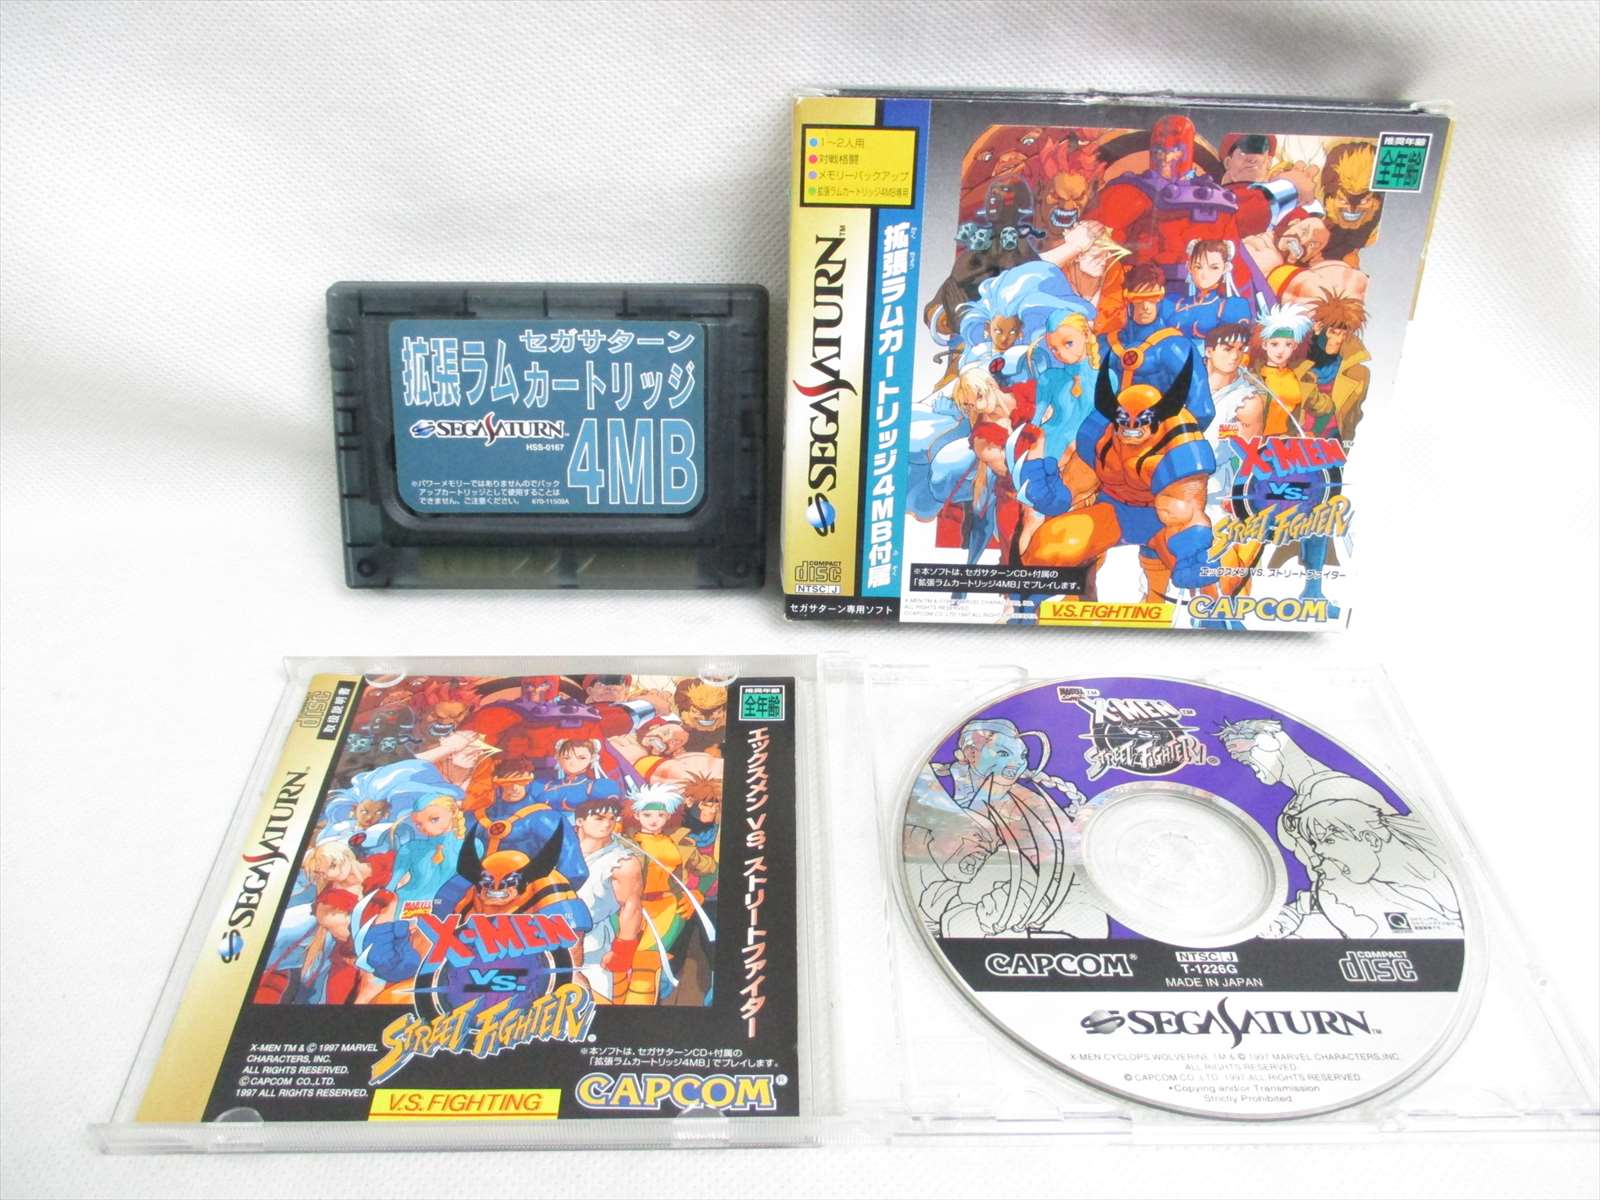 X Men Vs Street Fighter 4mb Refbbbc Sega Saturn Cd Japan Video